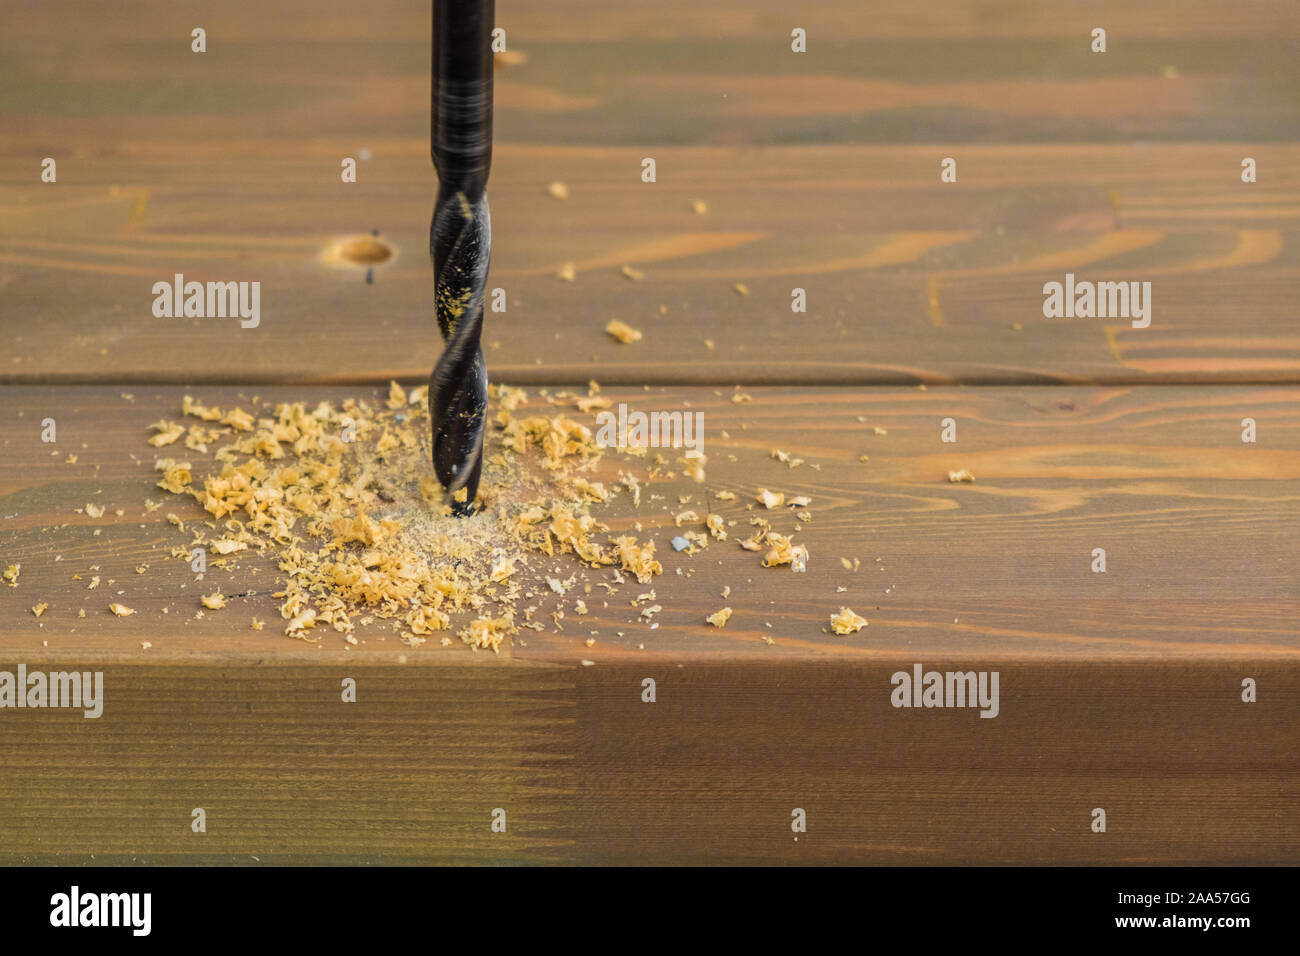 Loch in der holzbohlen mit Bohrmaschine von einem Tischler gebohrt Stockfoto